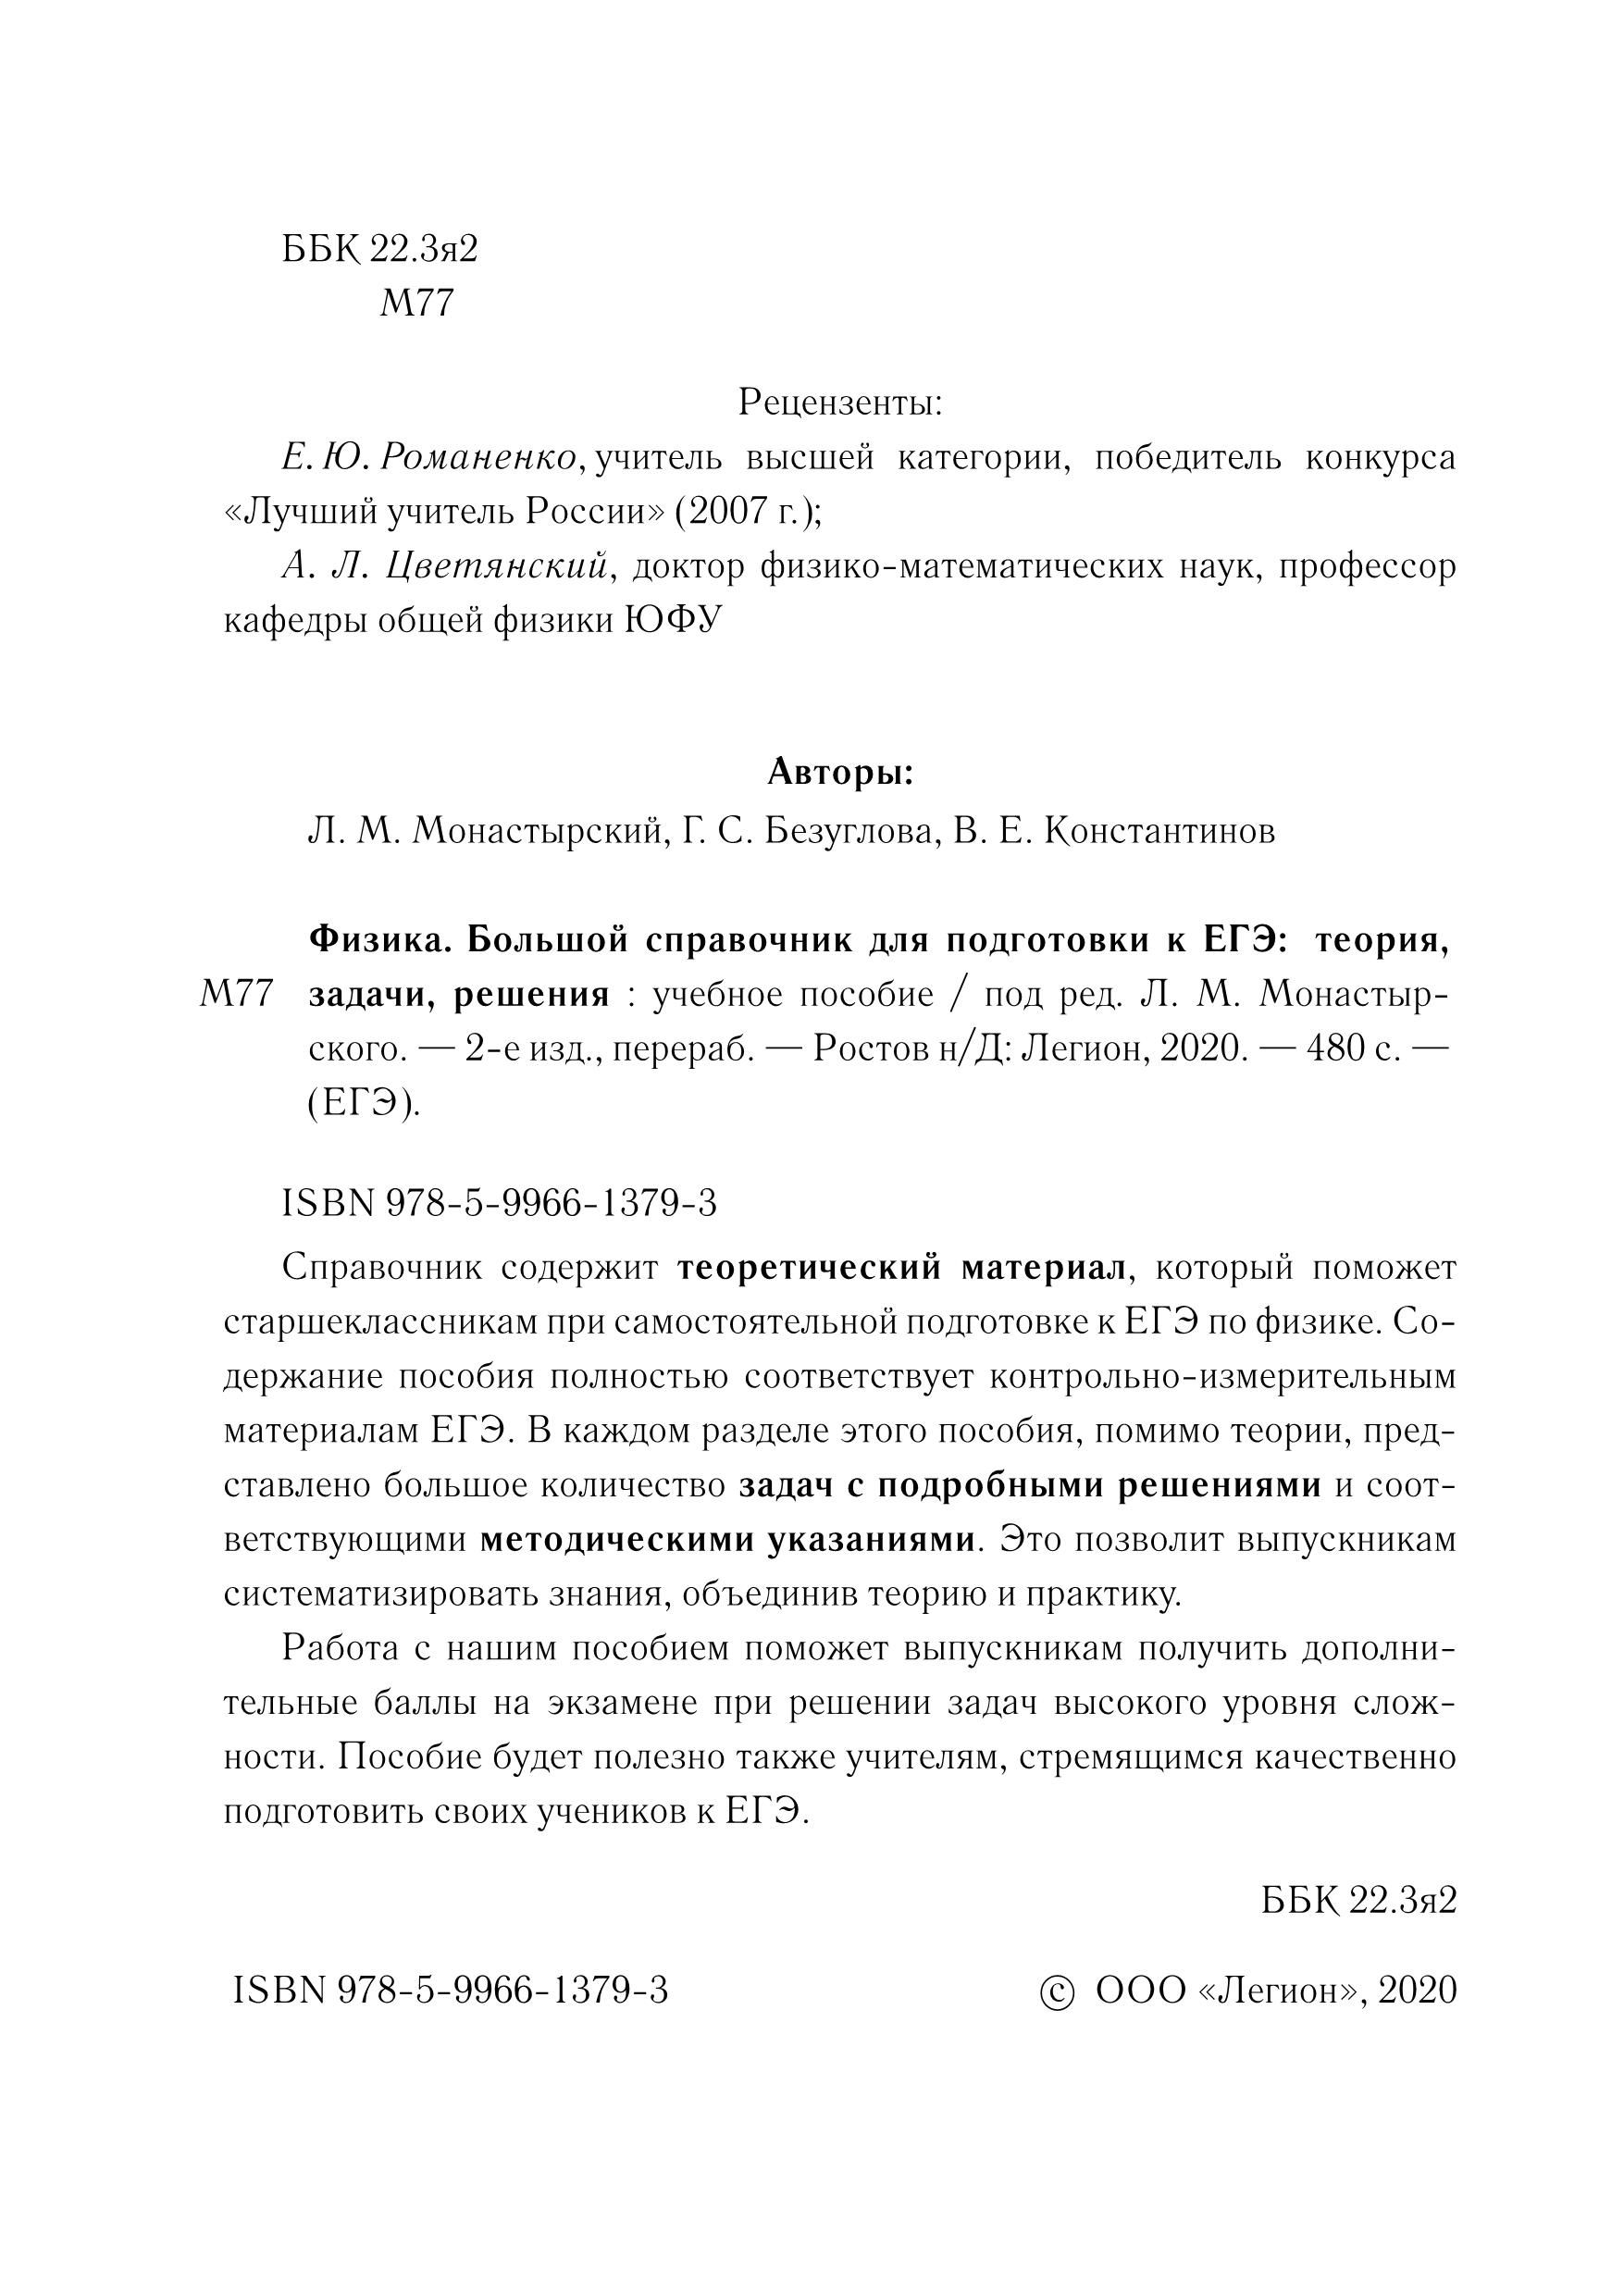 Физика. Большой справочник для подготовки к ЕГЭ. 2-е изд.